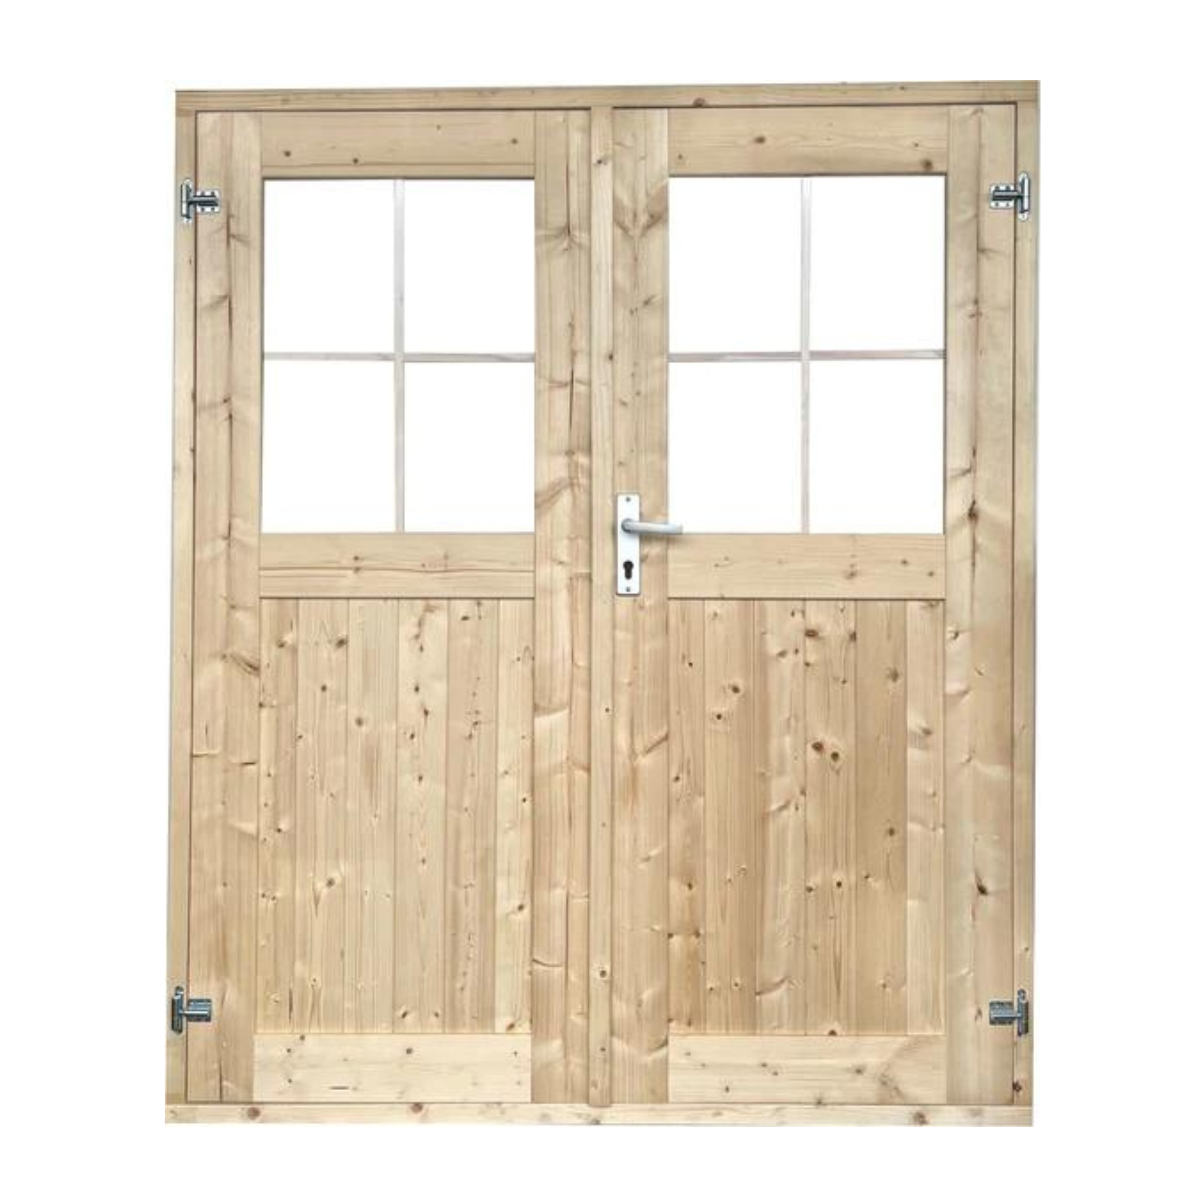 EASTWALL Double log cabin doors pine wood 150 x 180 cm garden door Including hinges and locks Including frames